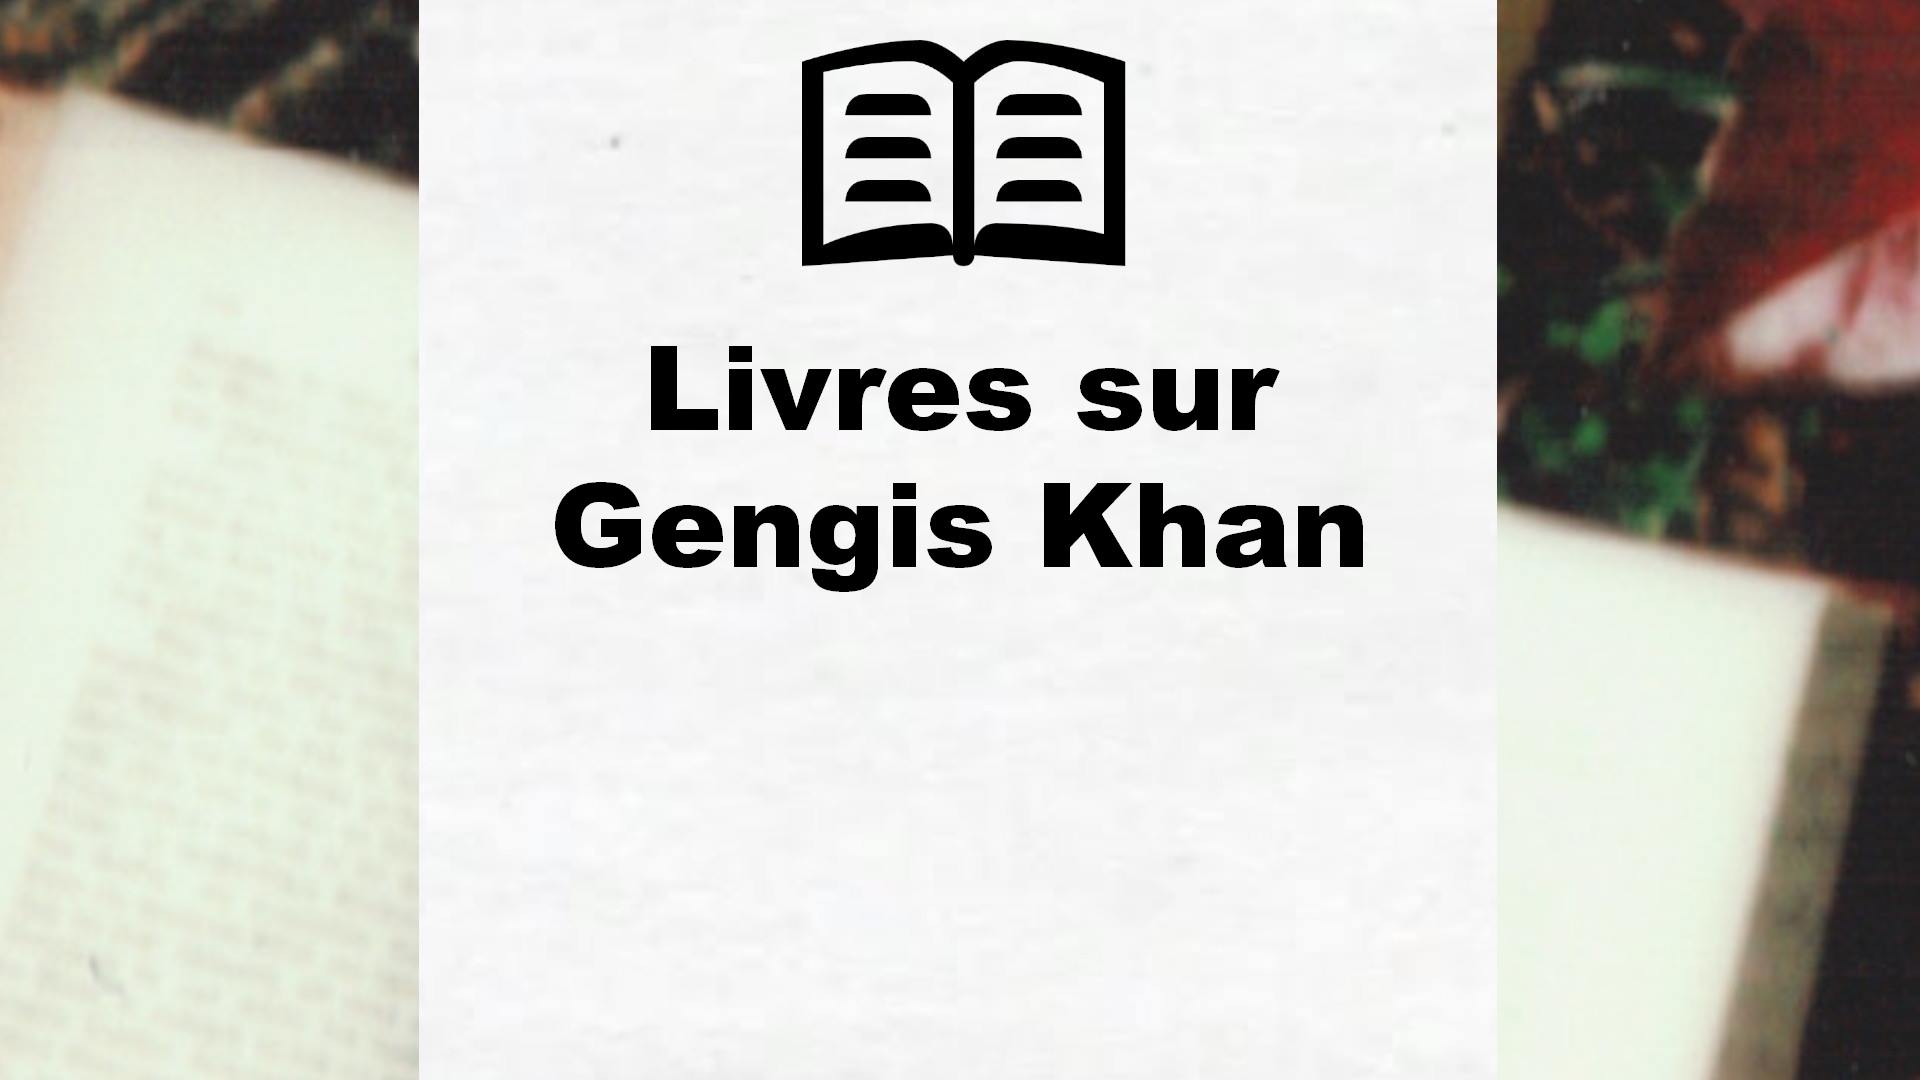 Livres sur Gengis Khan